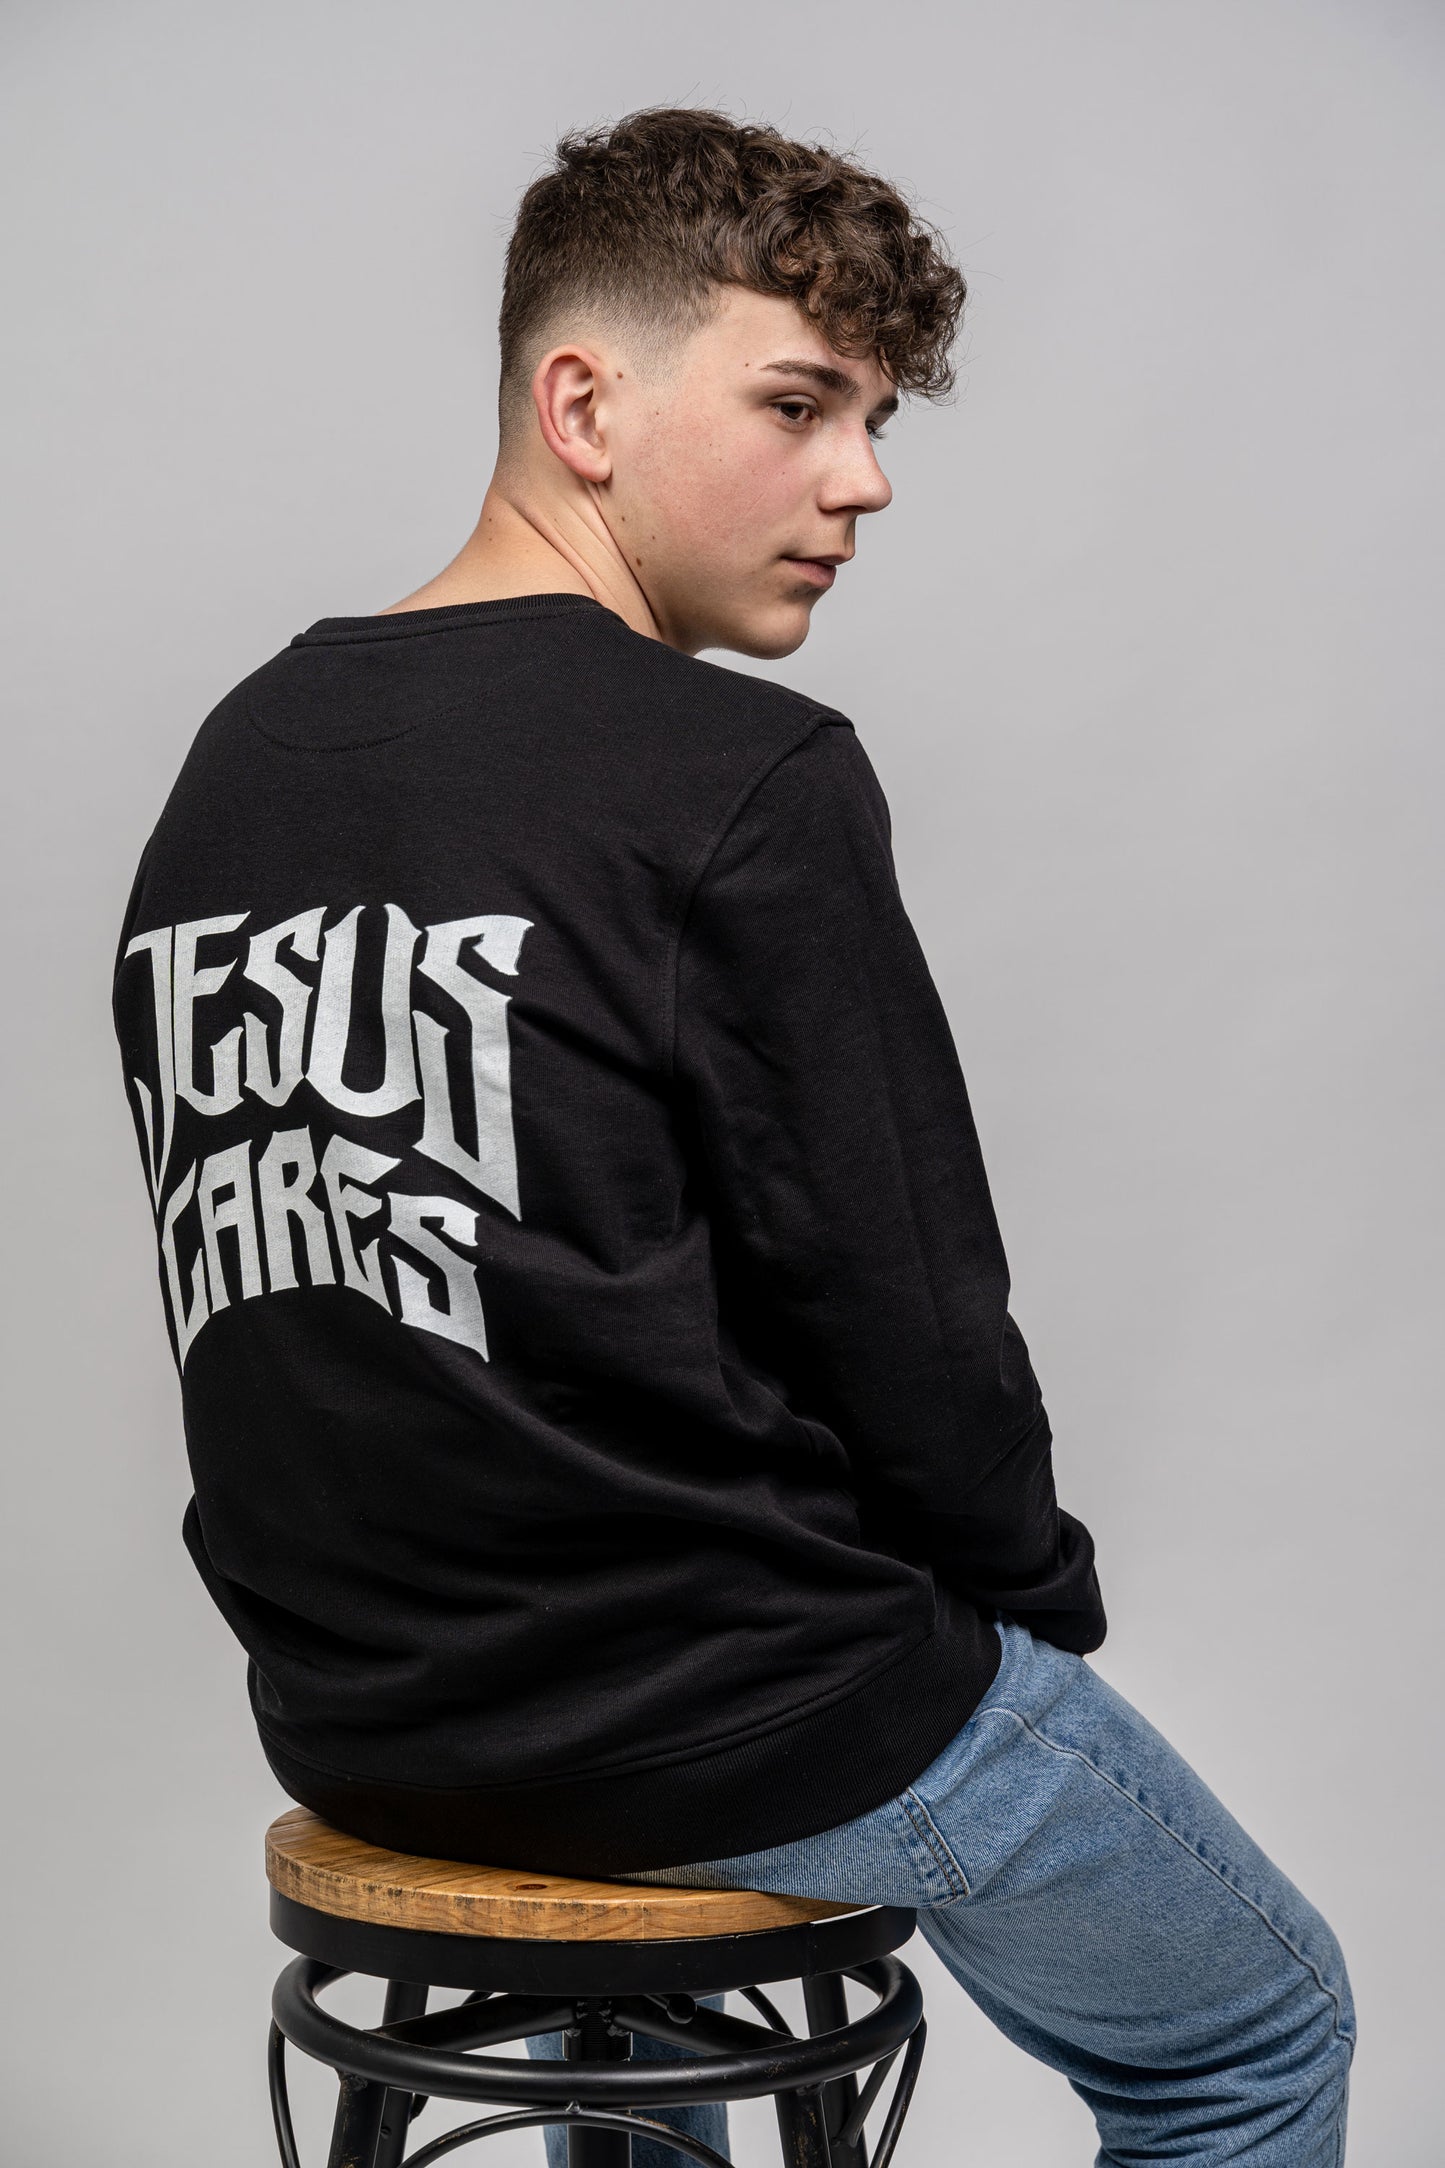 Christlicher Sweater in Schwarz mit weißer Aufschrift Jesus Cares